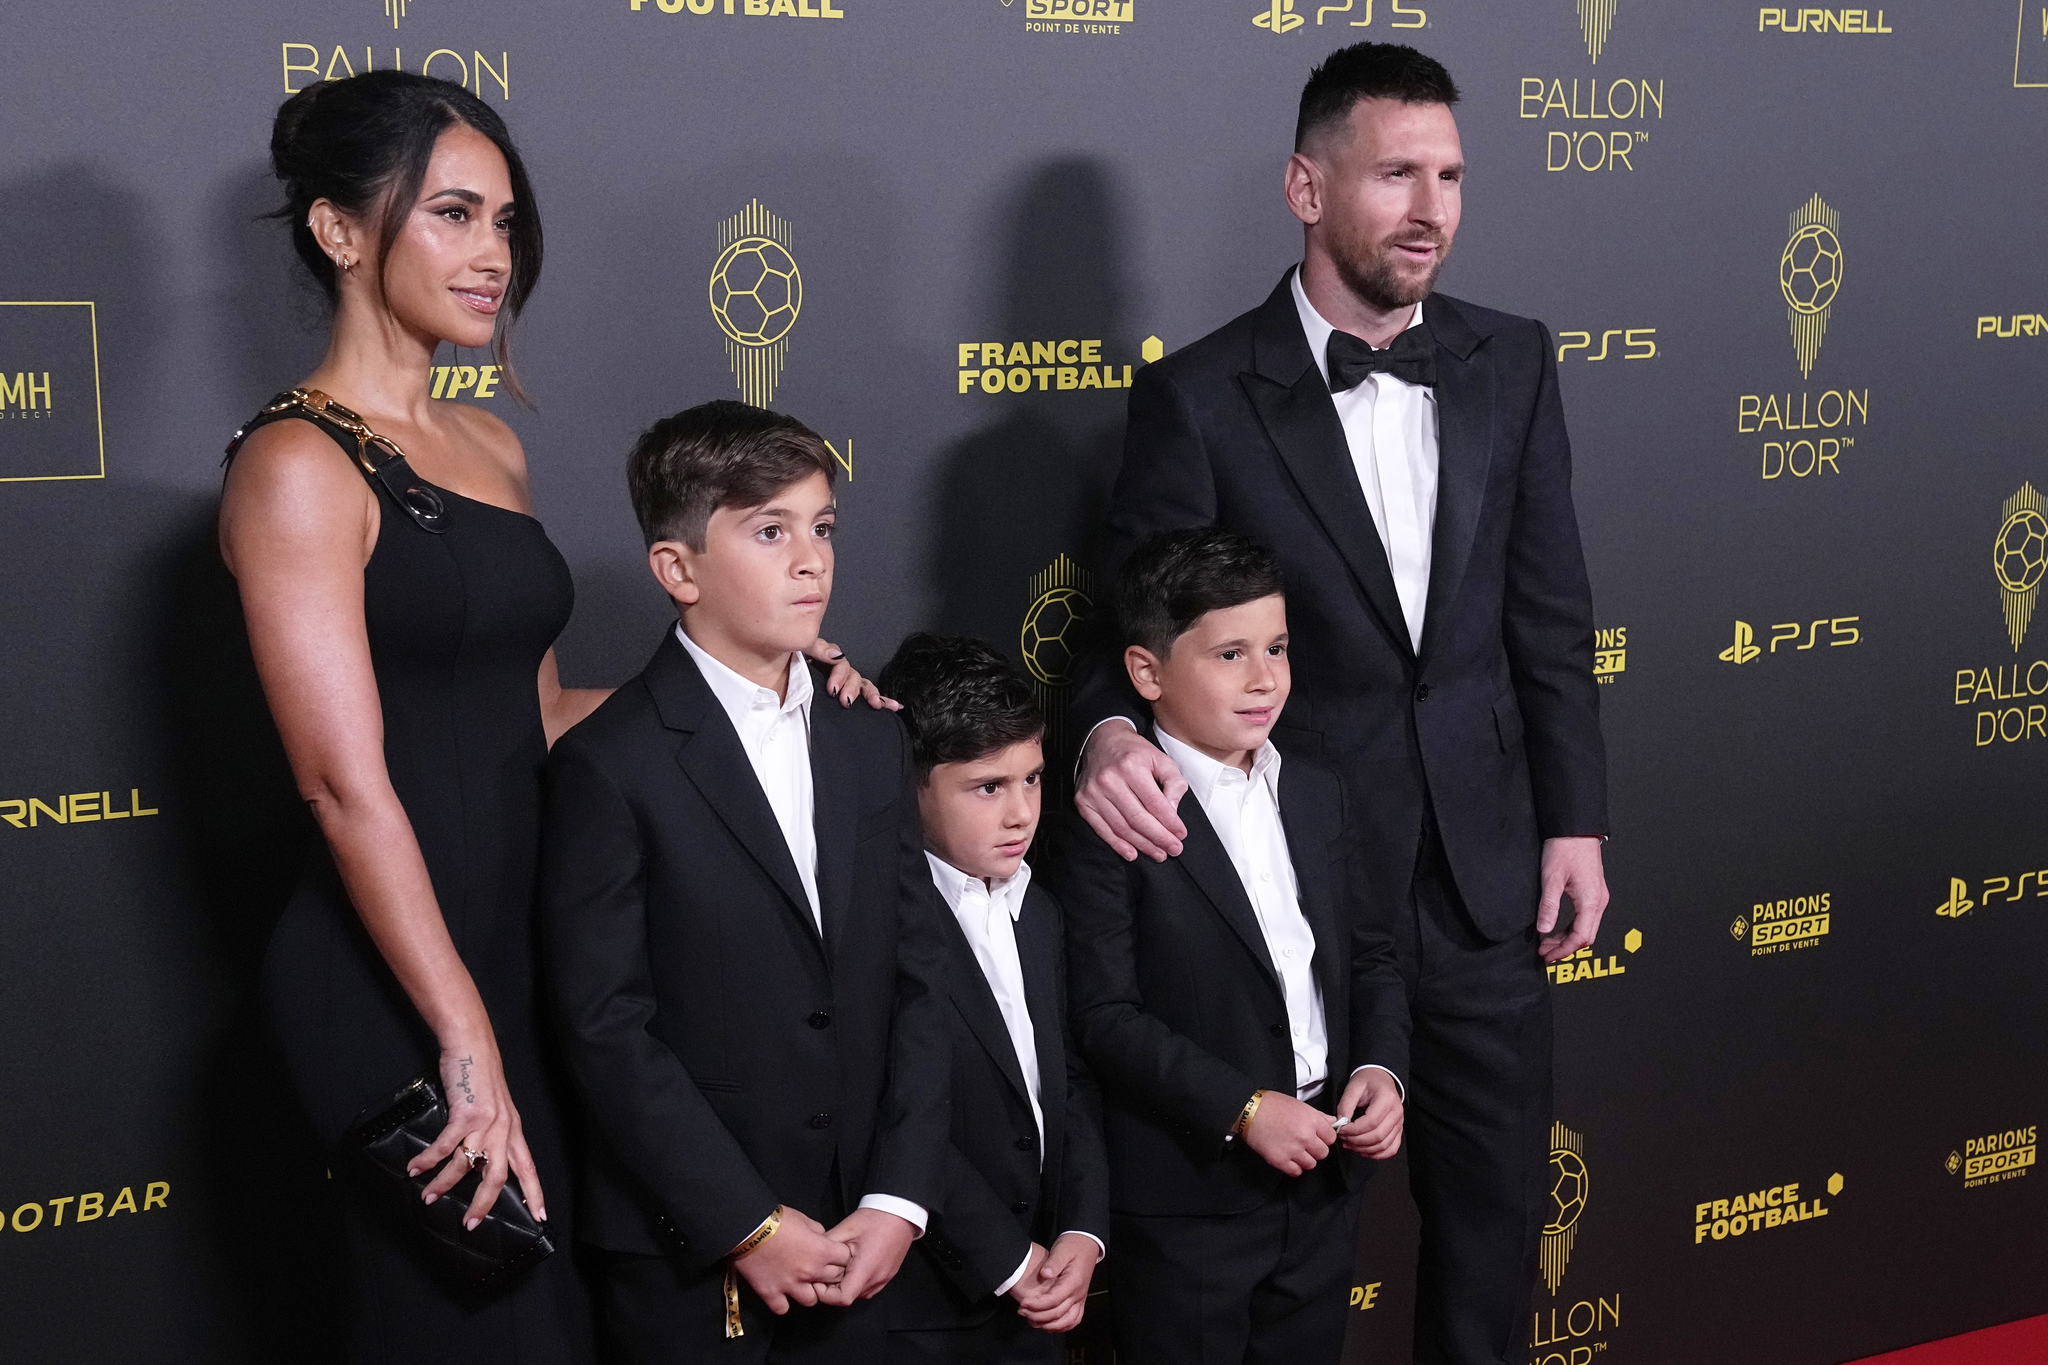 Inter Miamis Lionel Messi with Antonela Roccuzzo and their childrenat the 67th Ballon dOr award ceremony